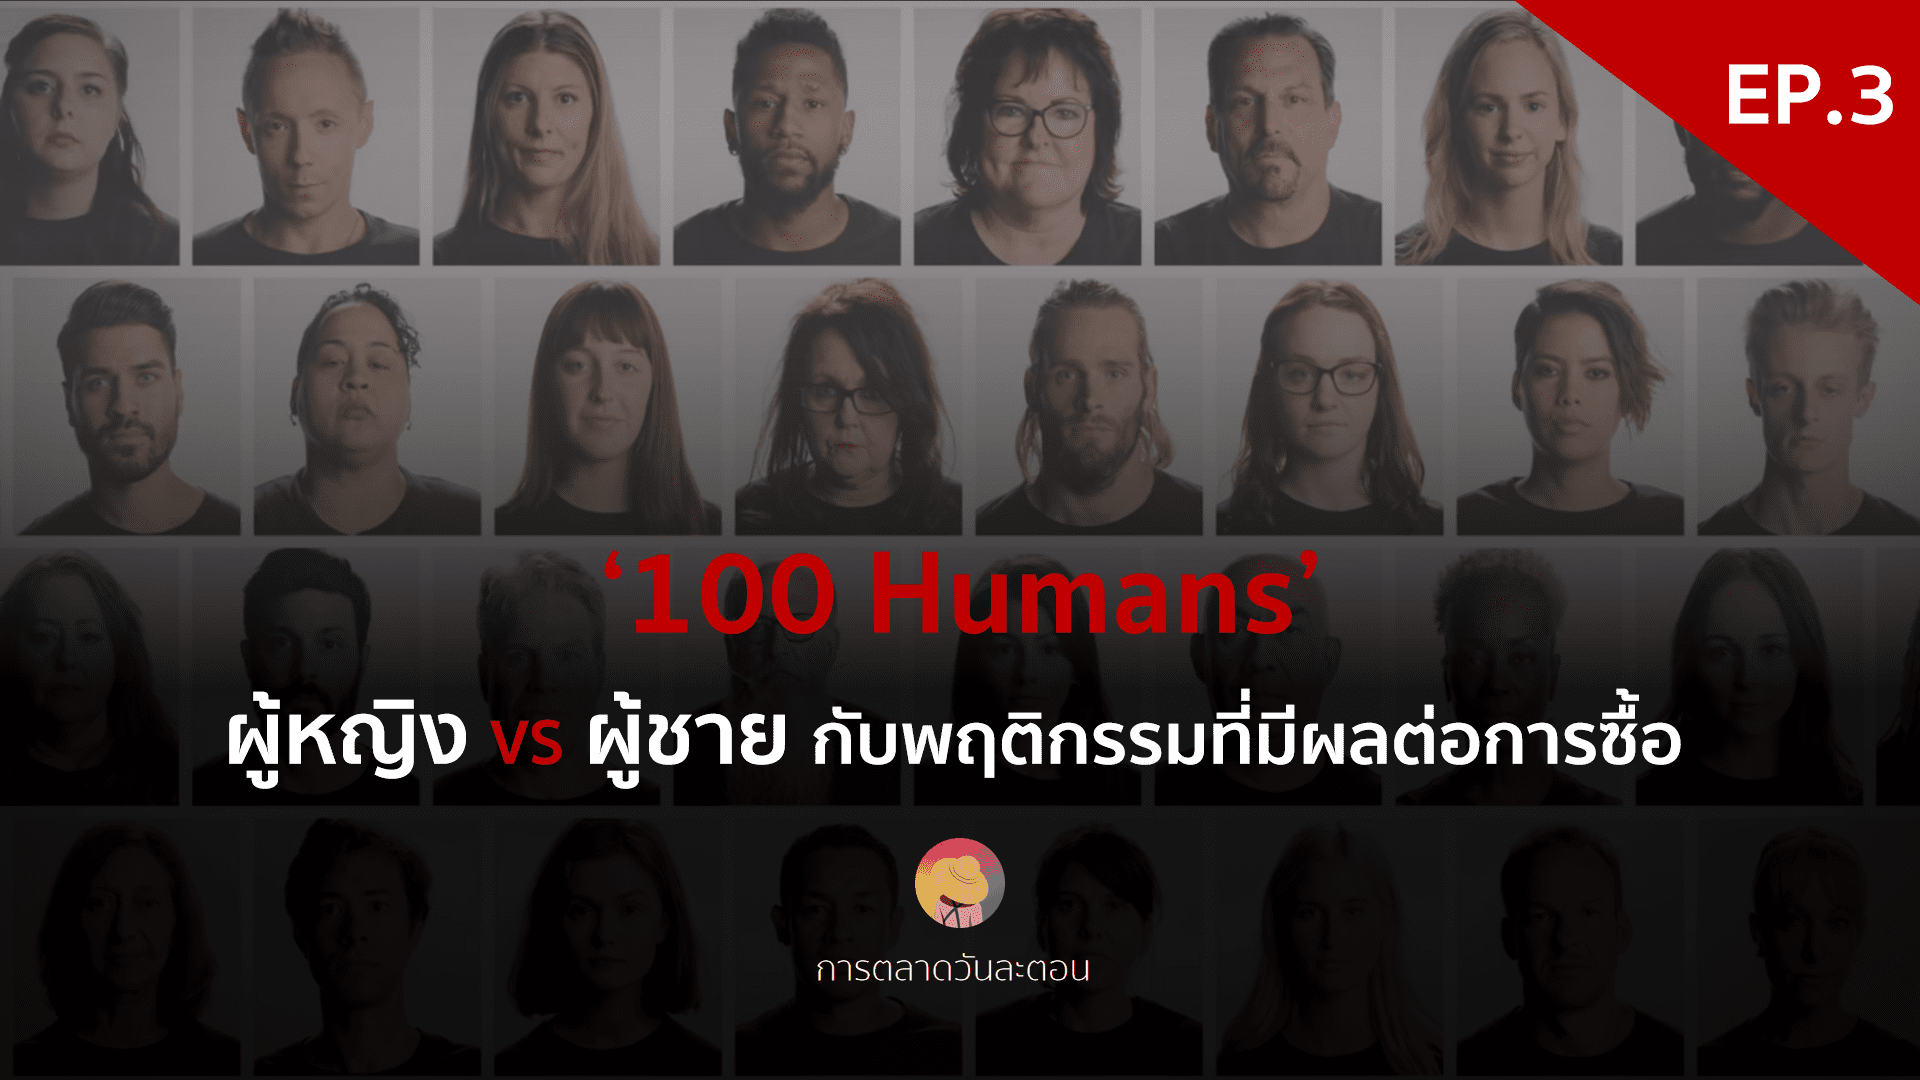 ผู้หญิง VS ผู้ชาย กับพฤติกรรมที่มีผลต่อการซื้อ ‘100 Humans’ – EP. 3